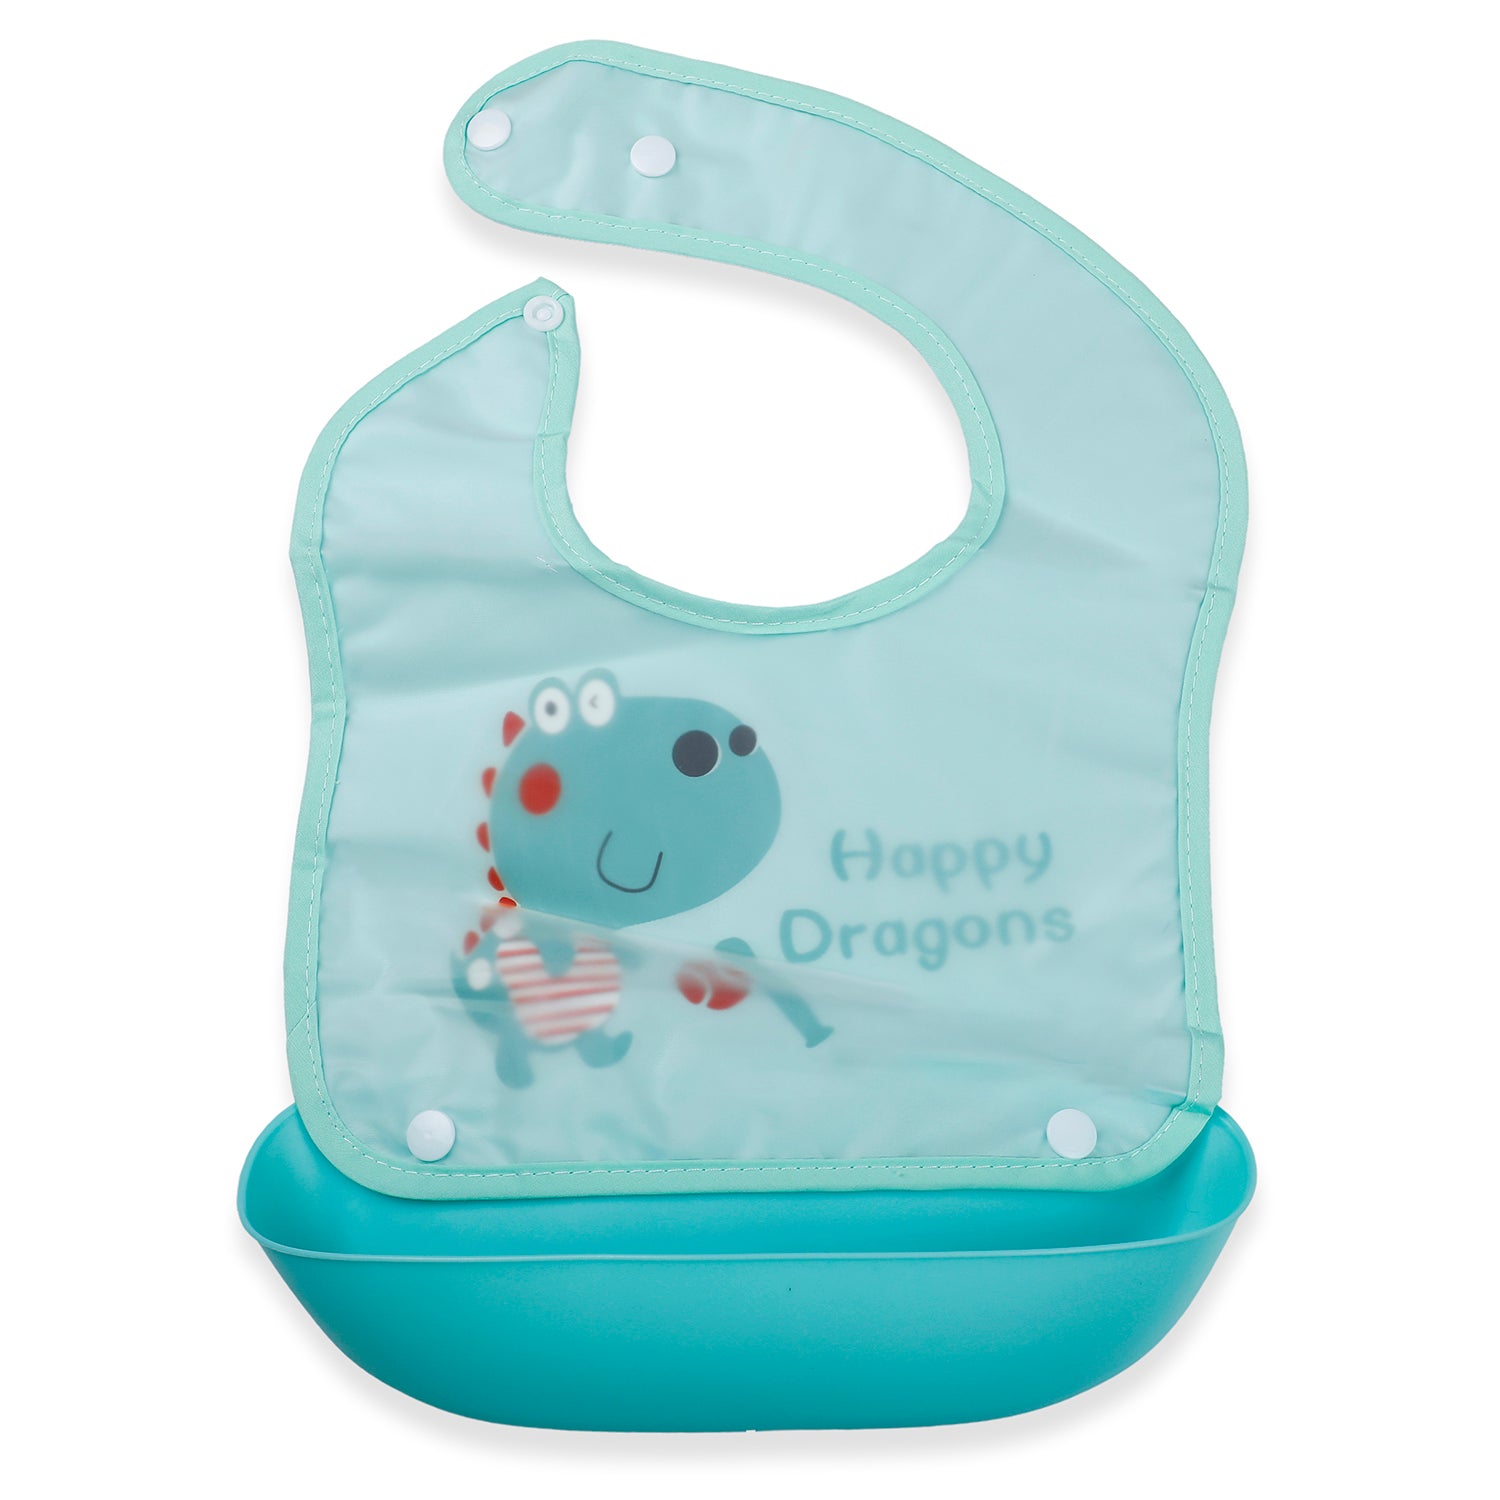 Baby Moo Happy Dragons Premium Waterproof Crumb Catcher Bibs - Turquoise